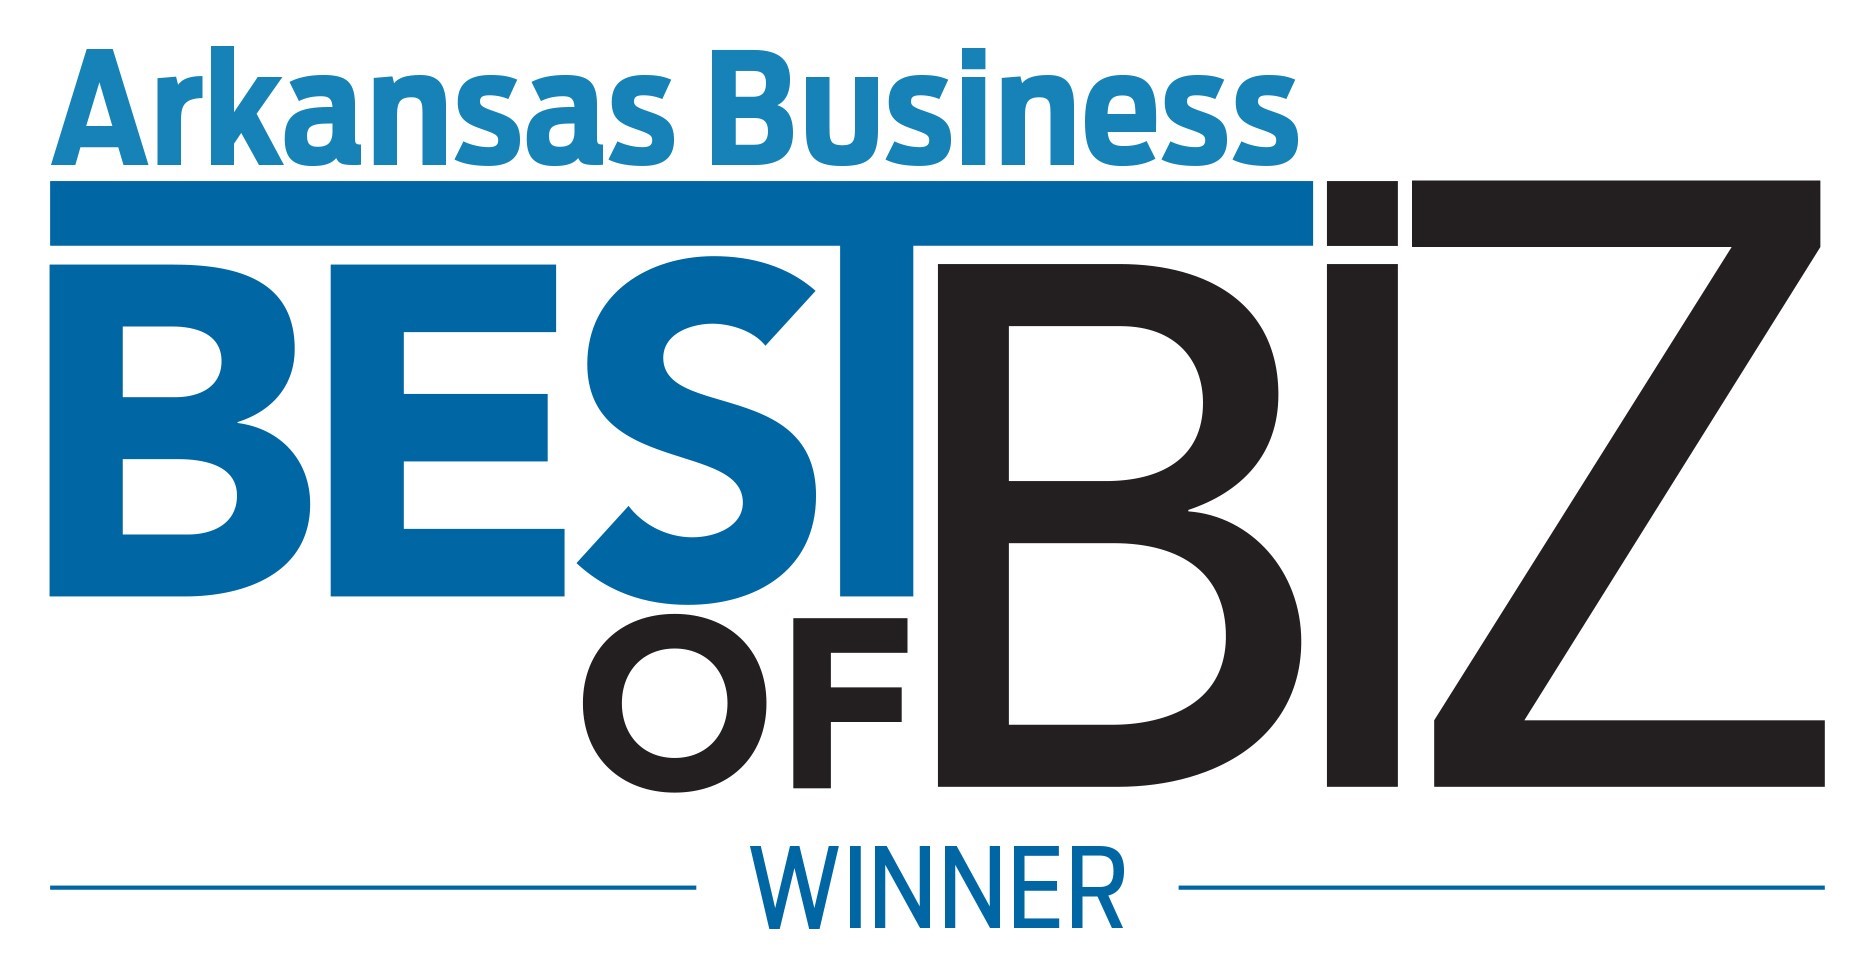 Arkansas Business Best of Biz winner logo.